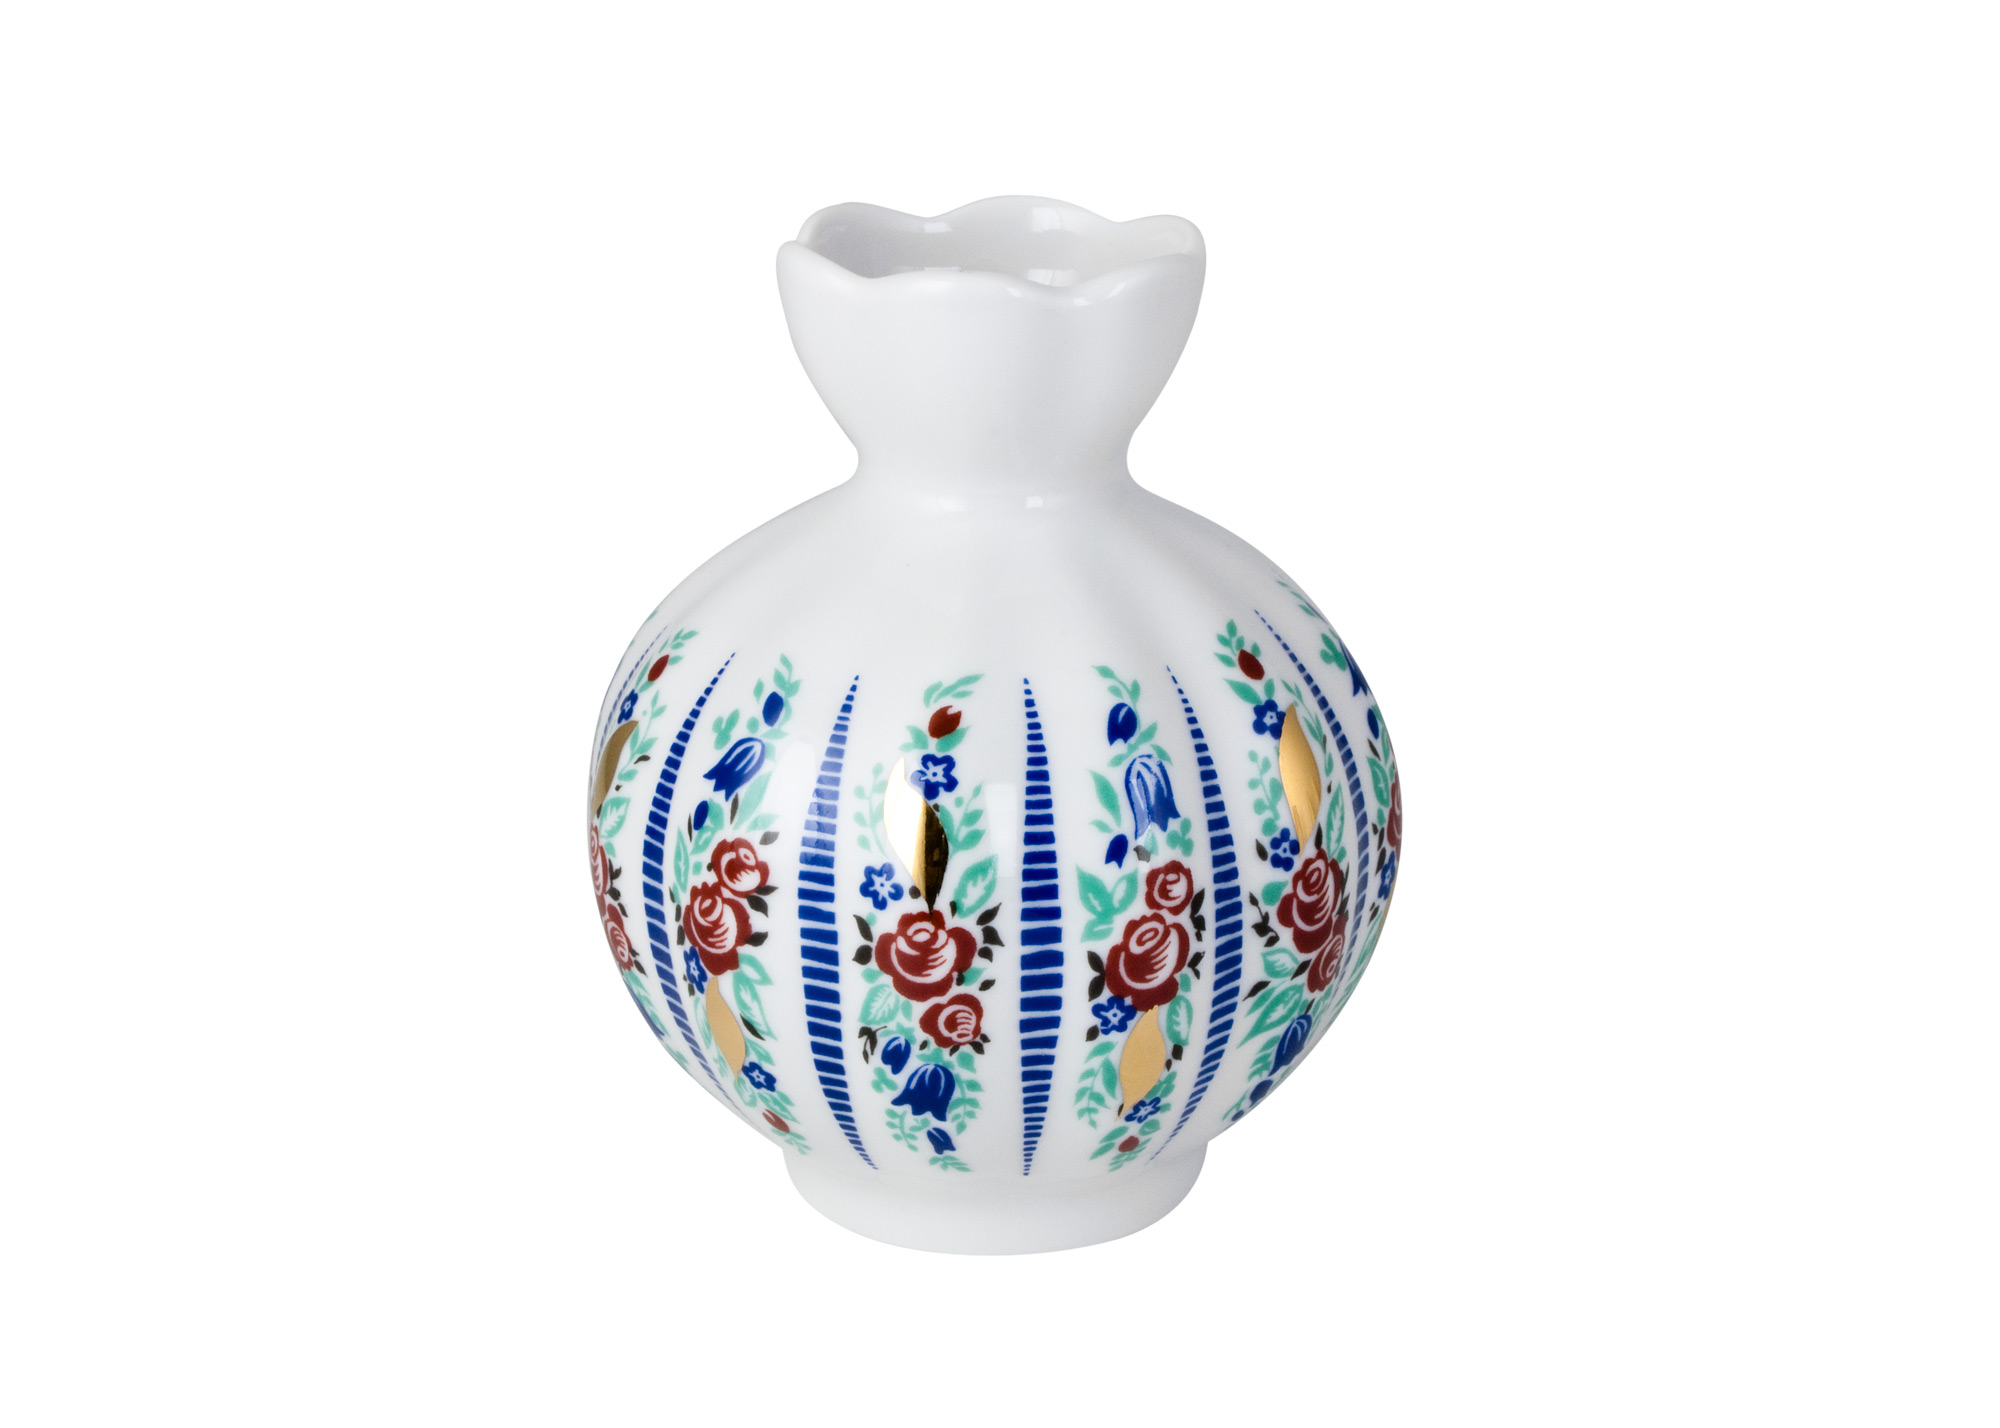 Buy Sarafan Flower Vase at GoldenCockerel.com